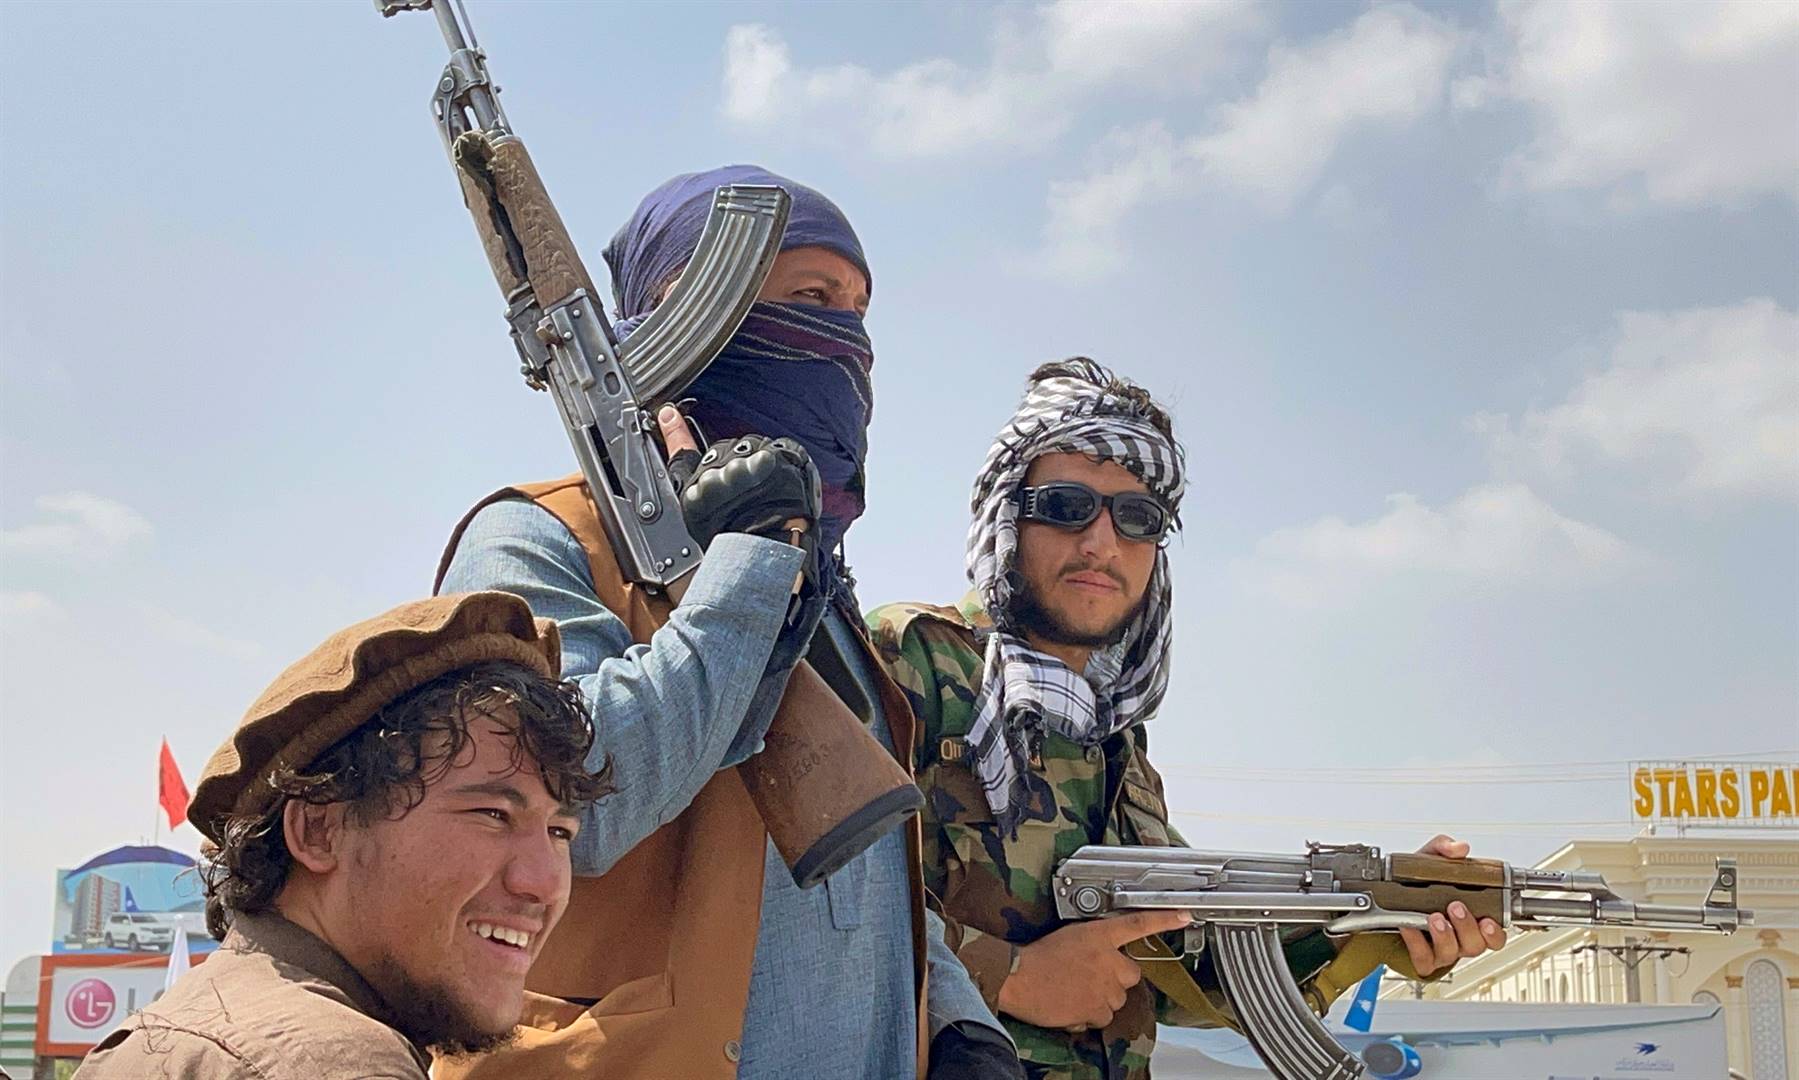 Taliban-vegters patrolleer die strate in die omgewing van Kaboel se lughawe. Sal die Taliban se “morele oorwinning” oor Amerika ook in Afrika ’n invloed hê?   Foto: Reuters